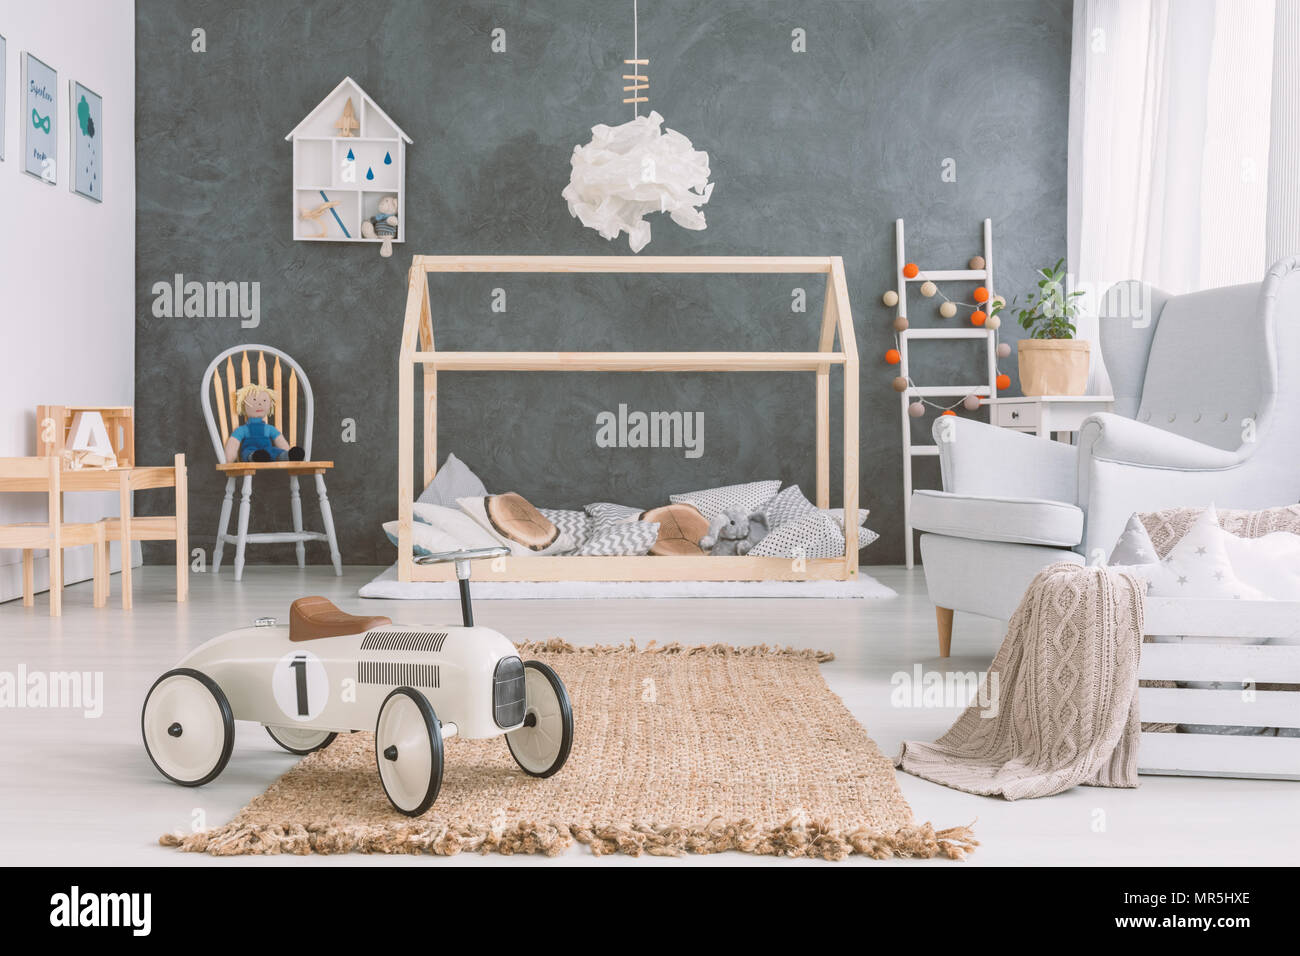 Chambre de bébé dans un style scandinave avec fauteuil et lit en bois Banque D'Images